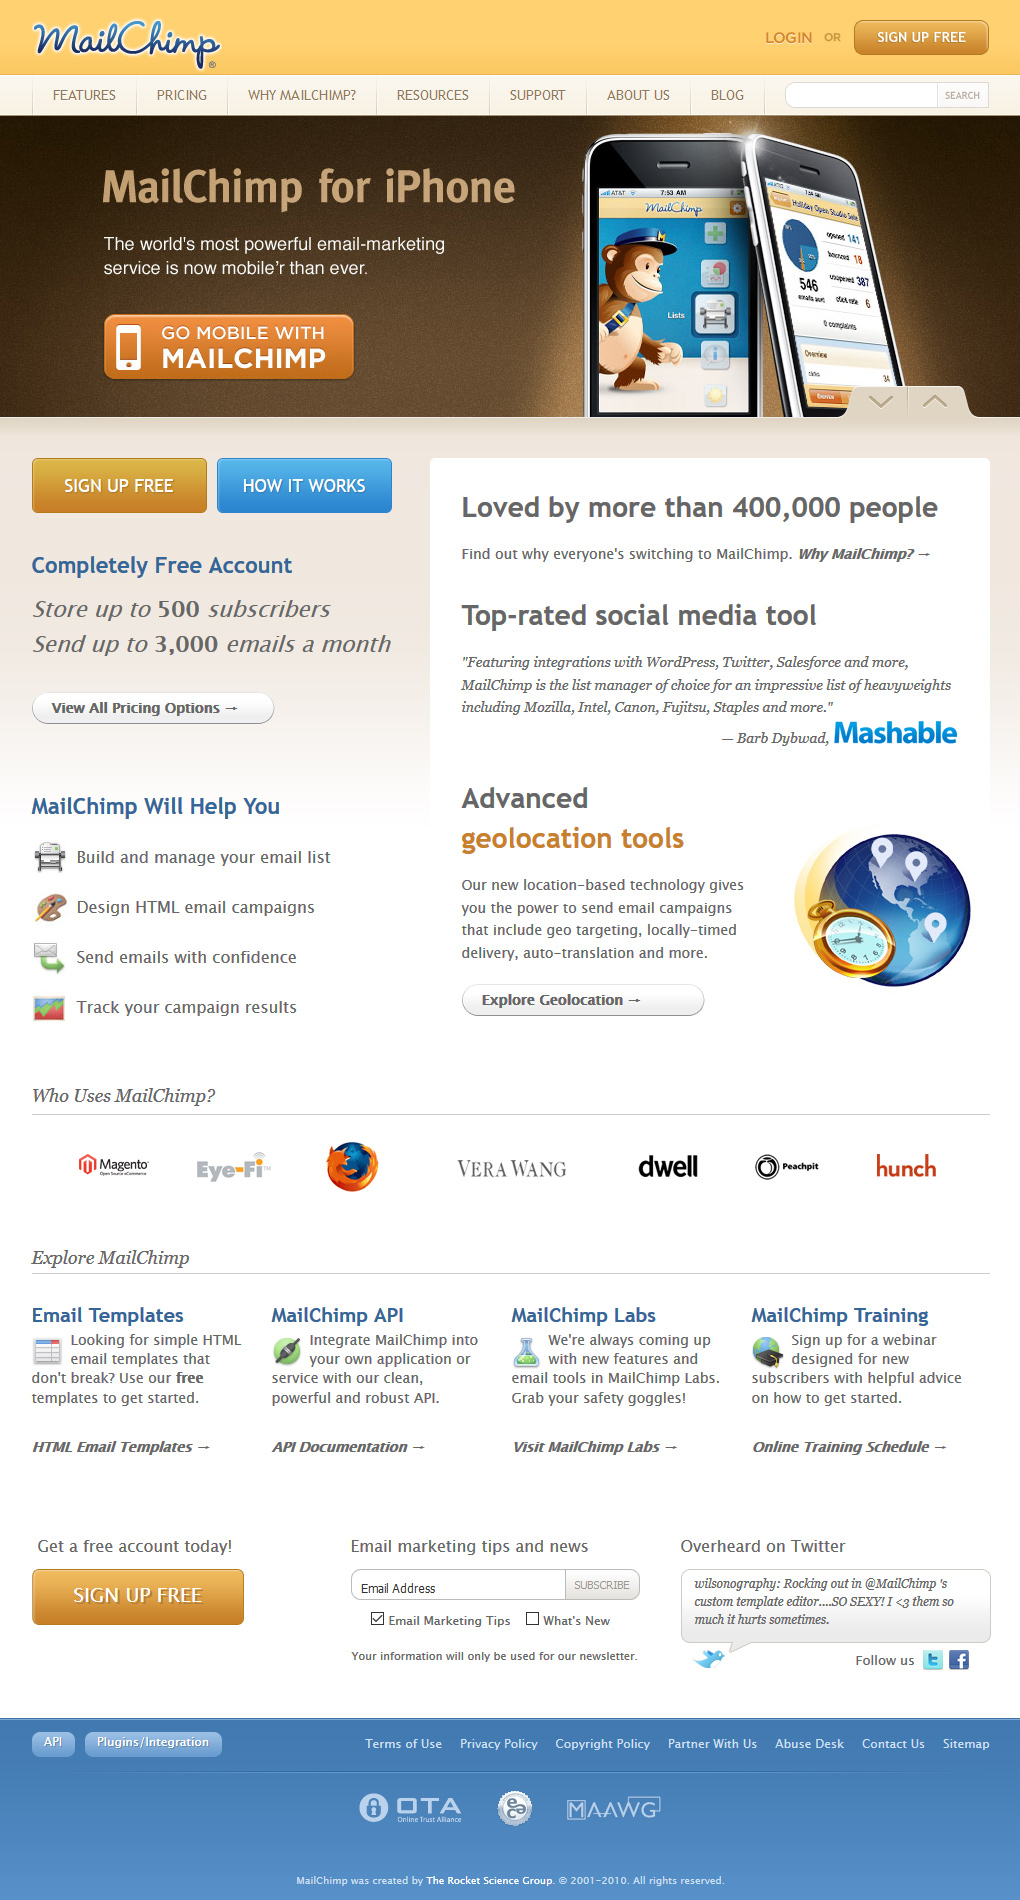 Mailchimp website in 2010